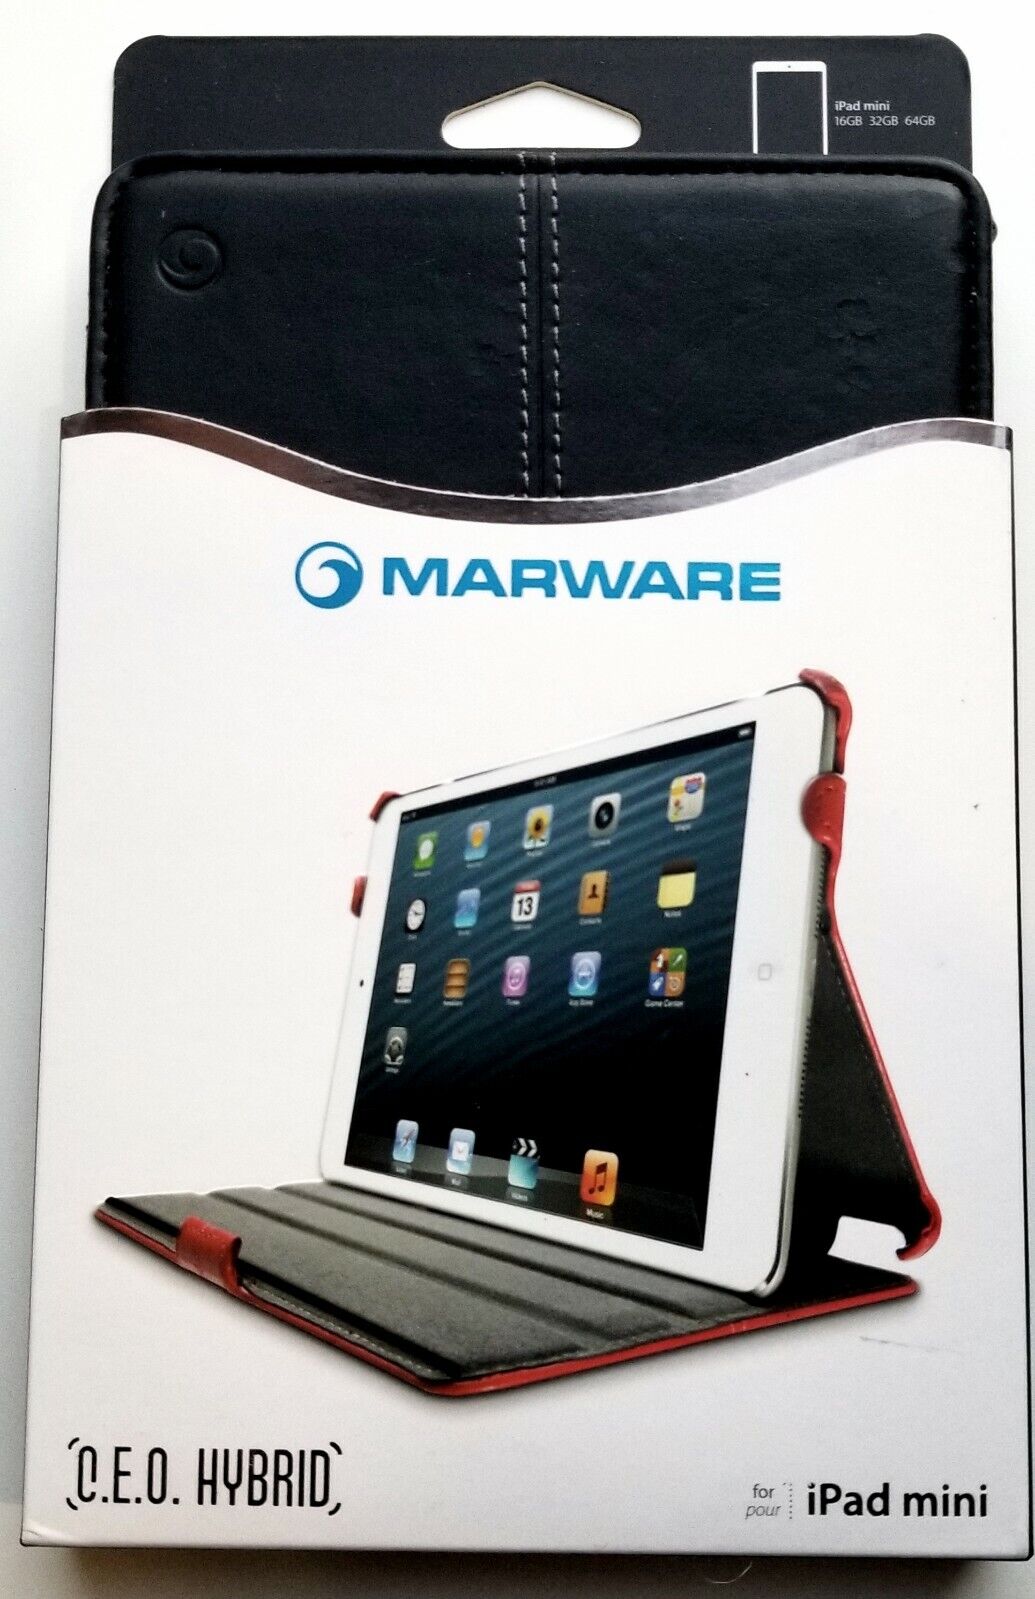  New Marware C.E.O. Hybrid Case for iPad Mini in Black*Genuine Leather Exterior*